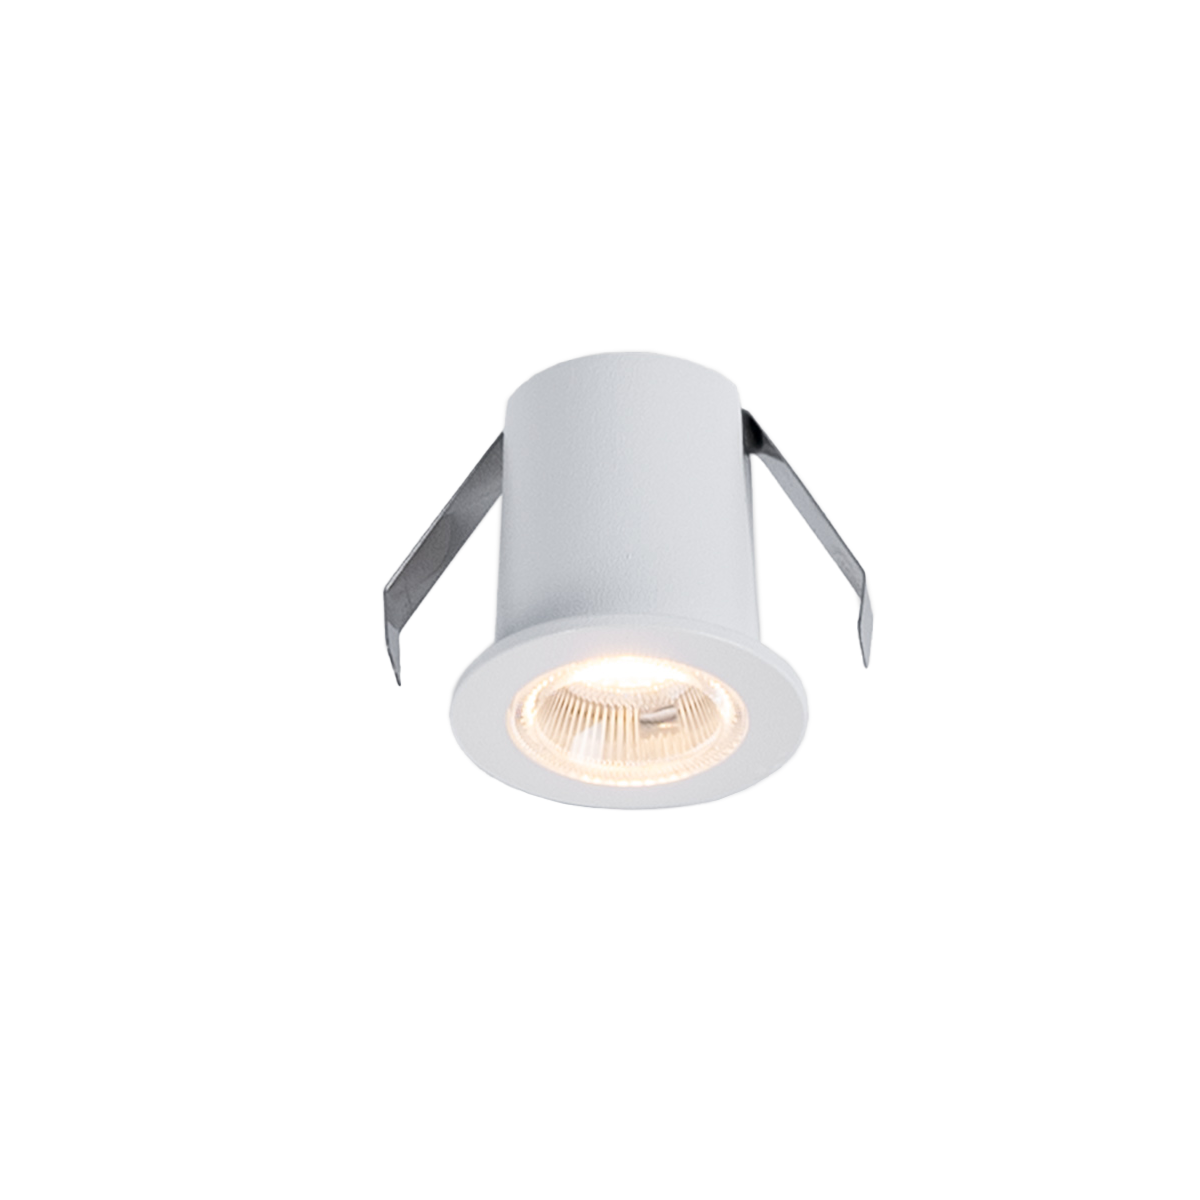 2W LED Einbaustrahler - Osram LED - UGR18 - Ø 25mm Einbau - weiß, rund - led einbauleuchte